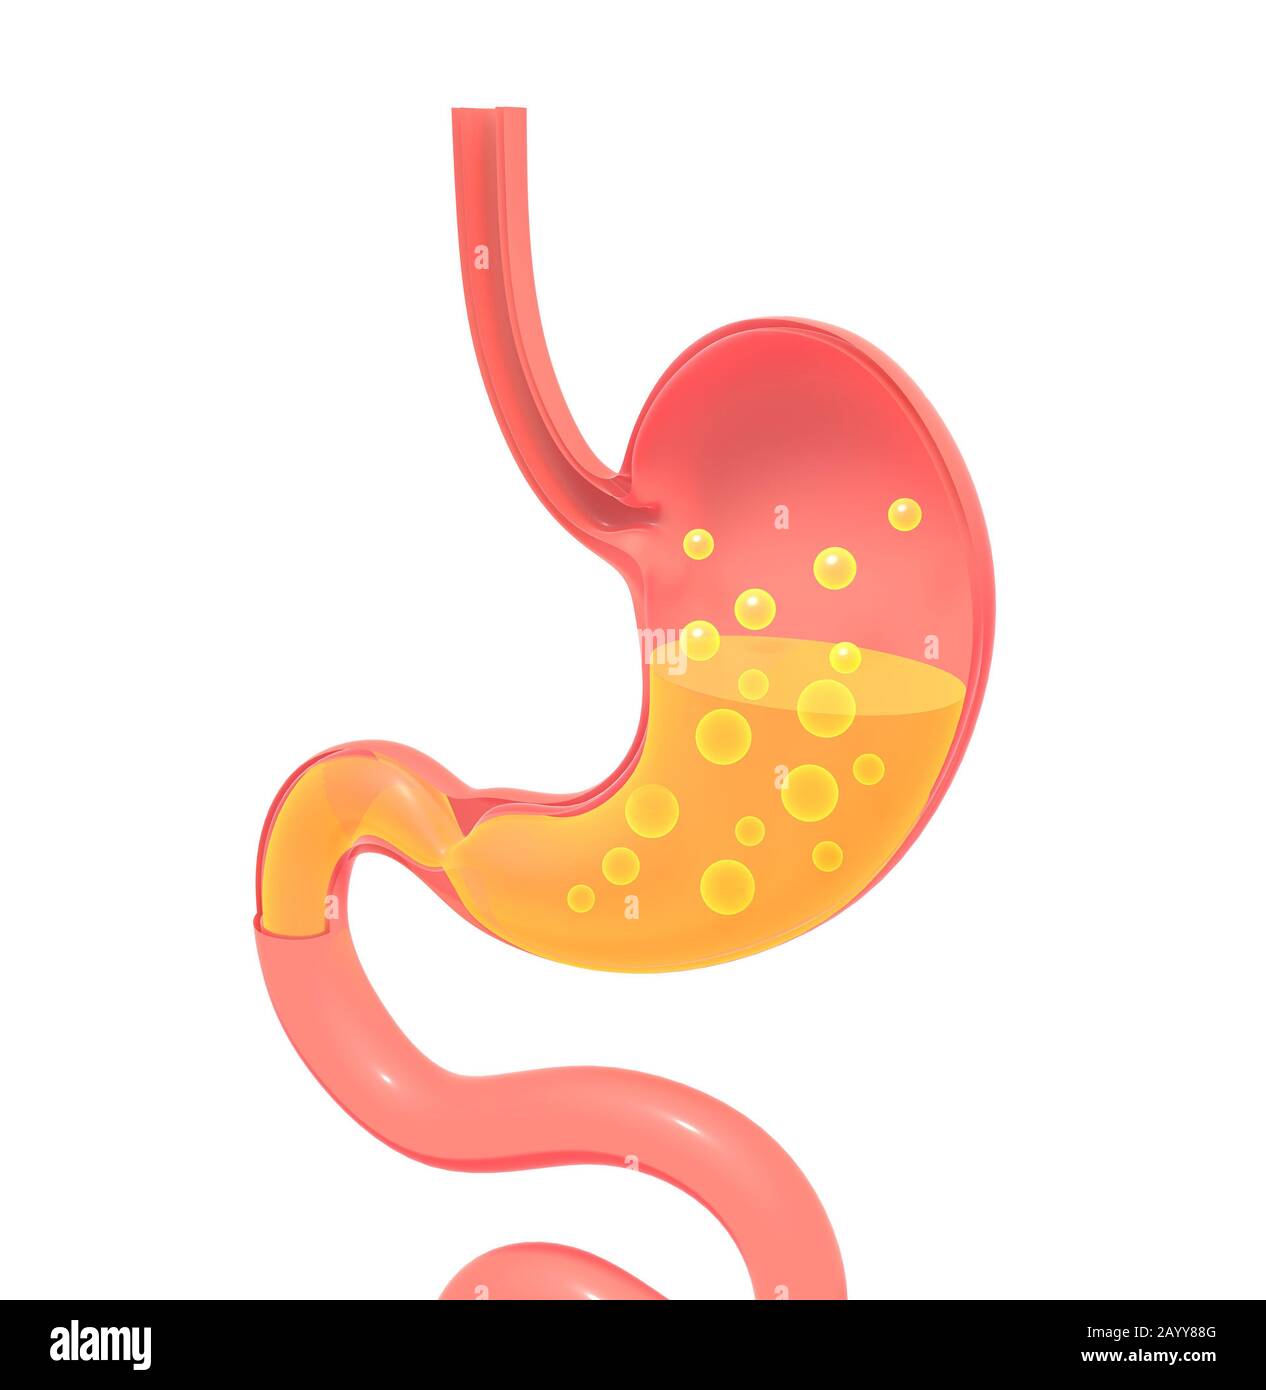 3D illustrazione dello stomaco che mostra l'interno che fa la digestione con i gas. Rappresentazione piatta con volume vuoto, silhouette isolata. Foto Stock